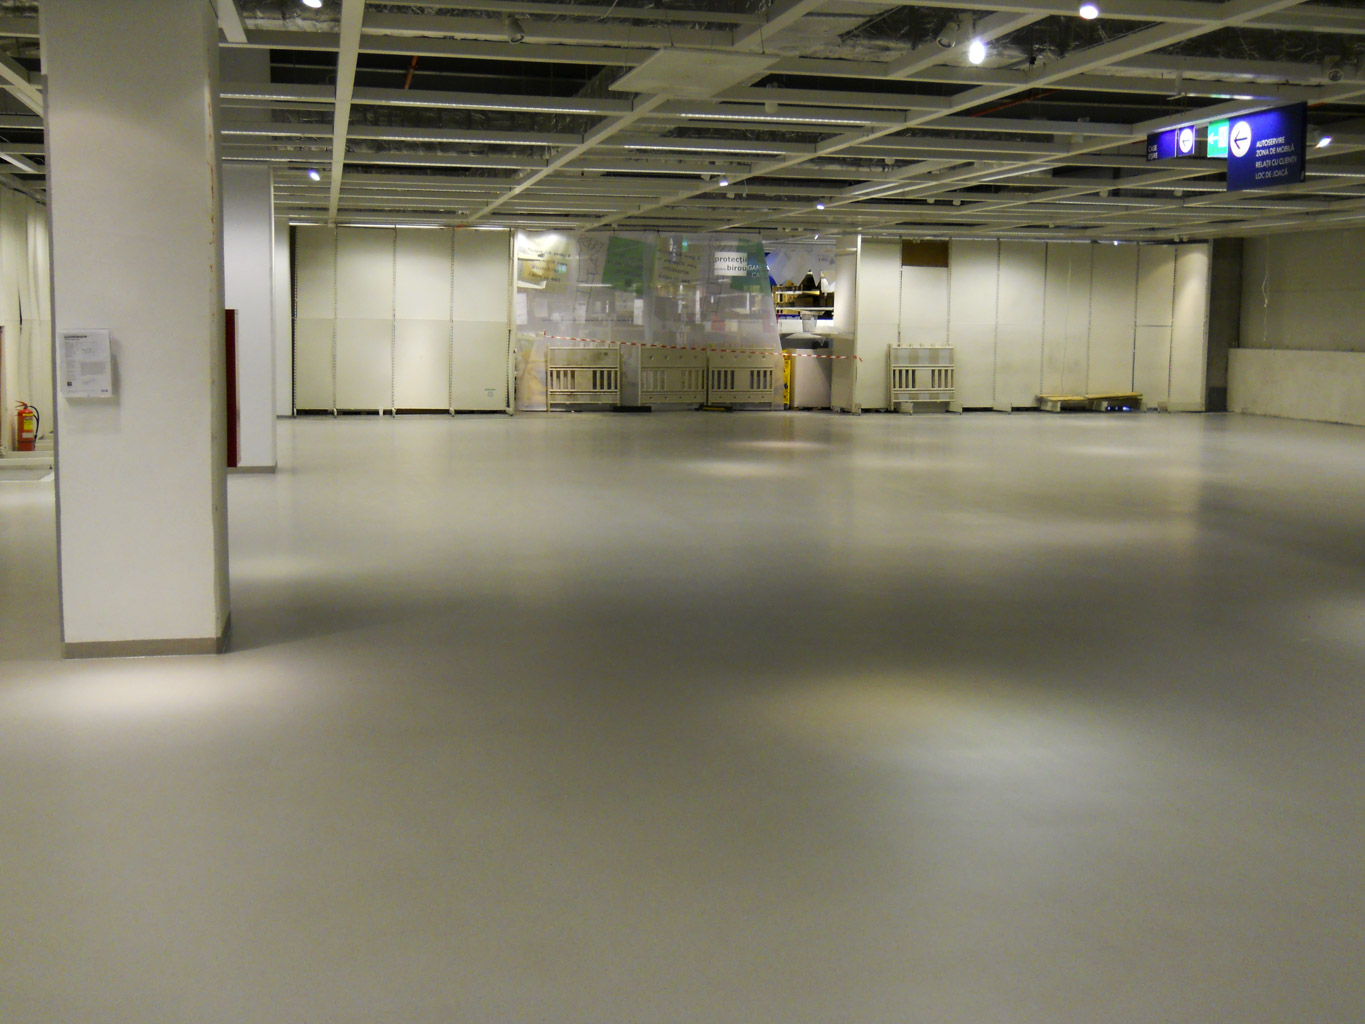 commercial epoxy flooring